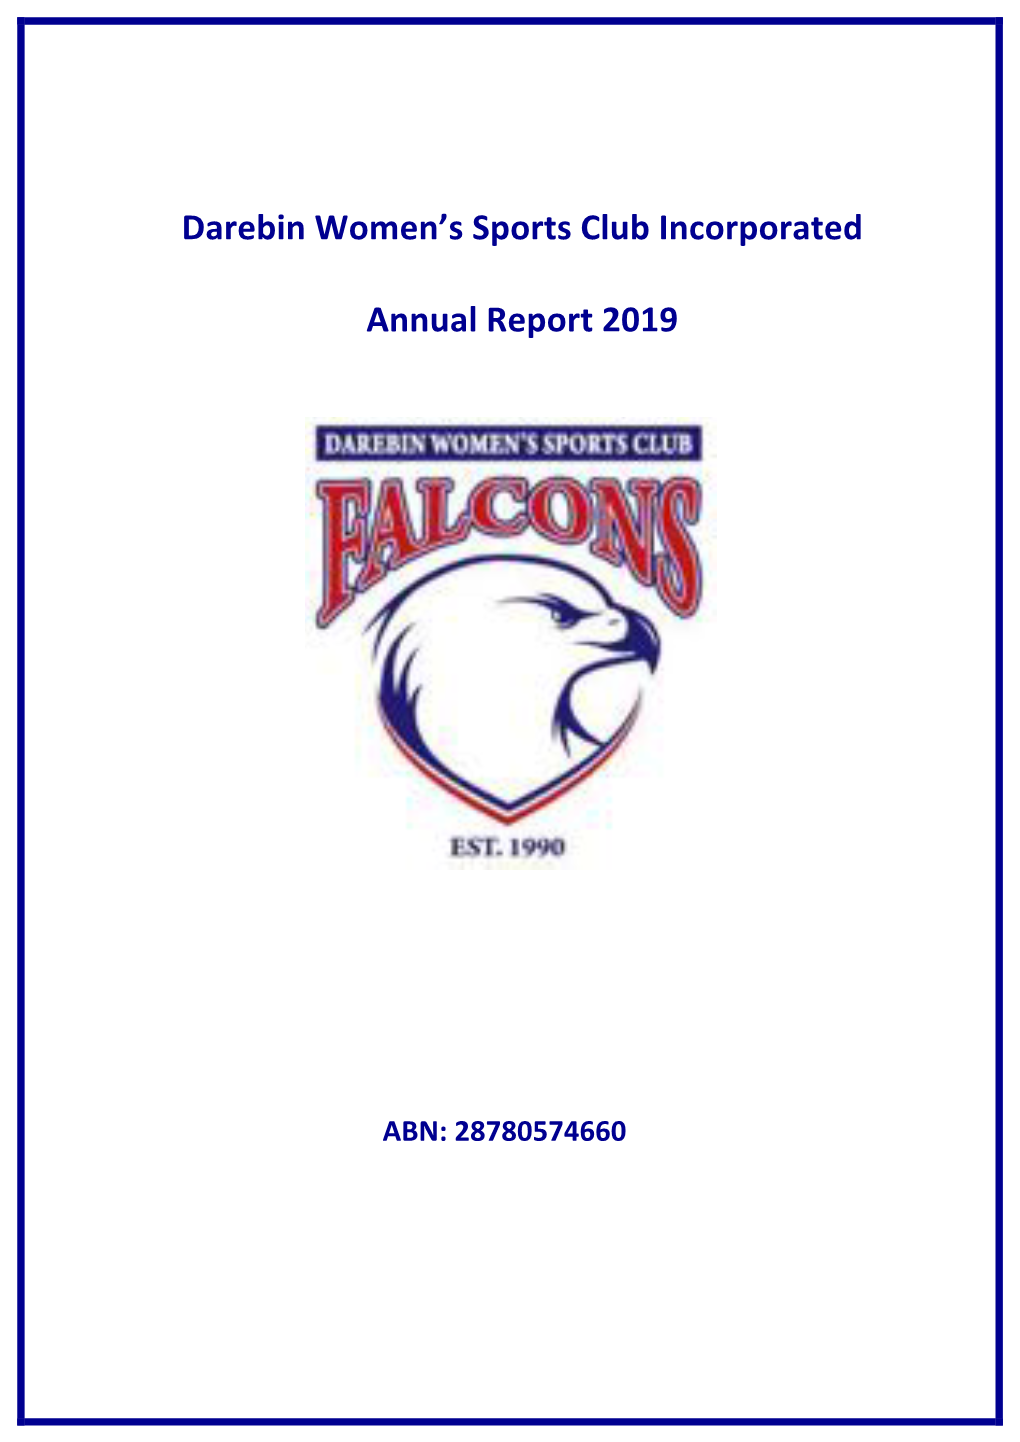 Darebin Women's Sports Club Incorporated Annual Report 2019